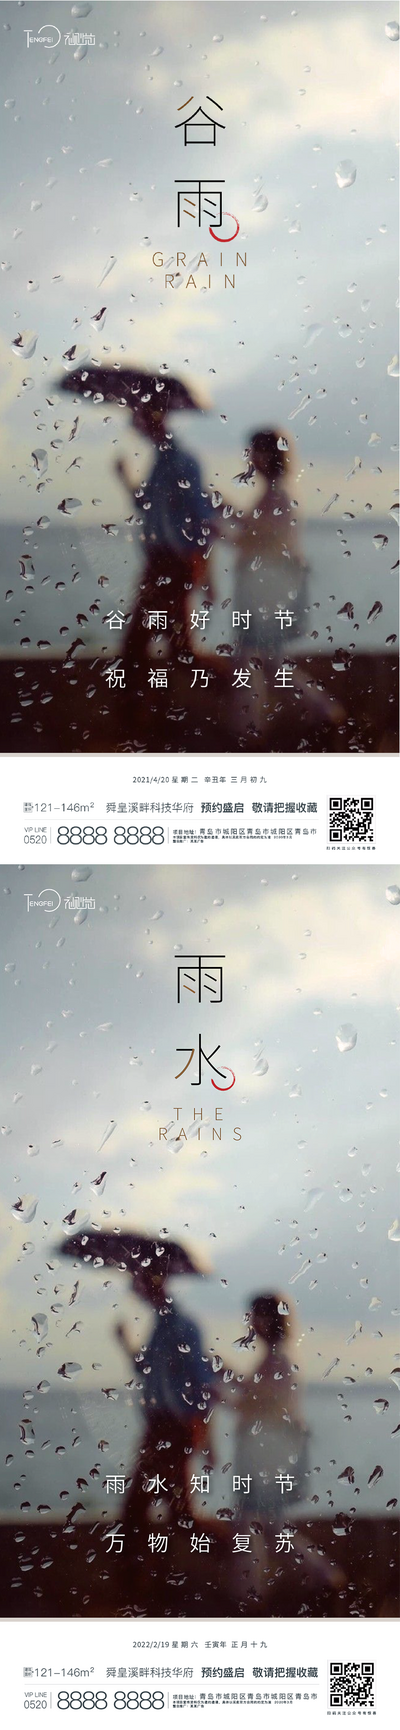 南门网 海报 二十四节气 谷雨 雨水  雨滴 水珠 人影